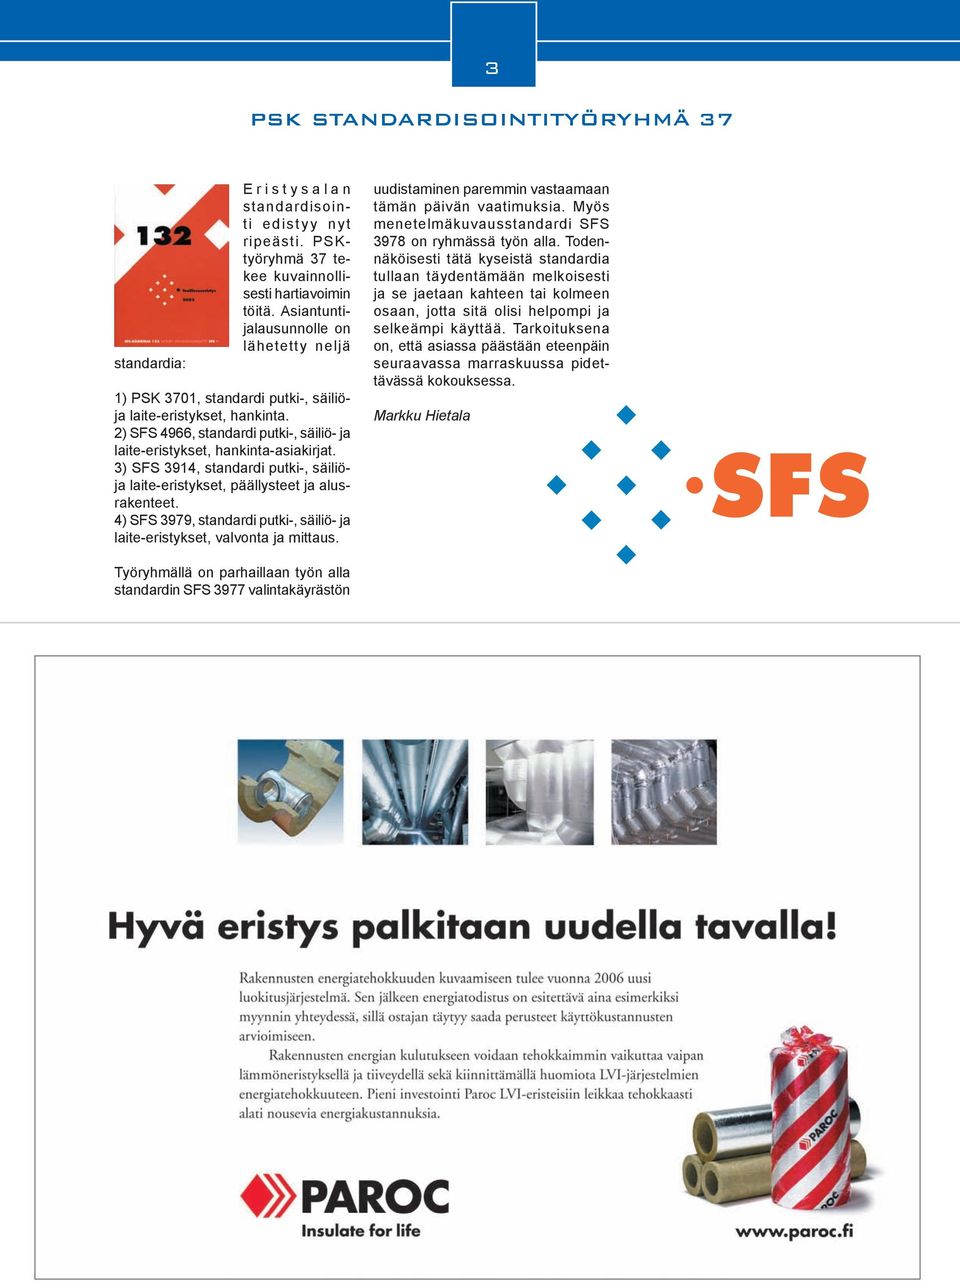 3) SFS 3914, standardi putki-, säiliöja laite-eristykset, päällysteet ja alusrakenteet. 4) SFS 3979, standardi putki-, säiliö- ja laite-eristykset, valvonta ja mittaus.